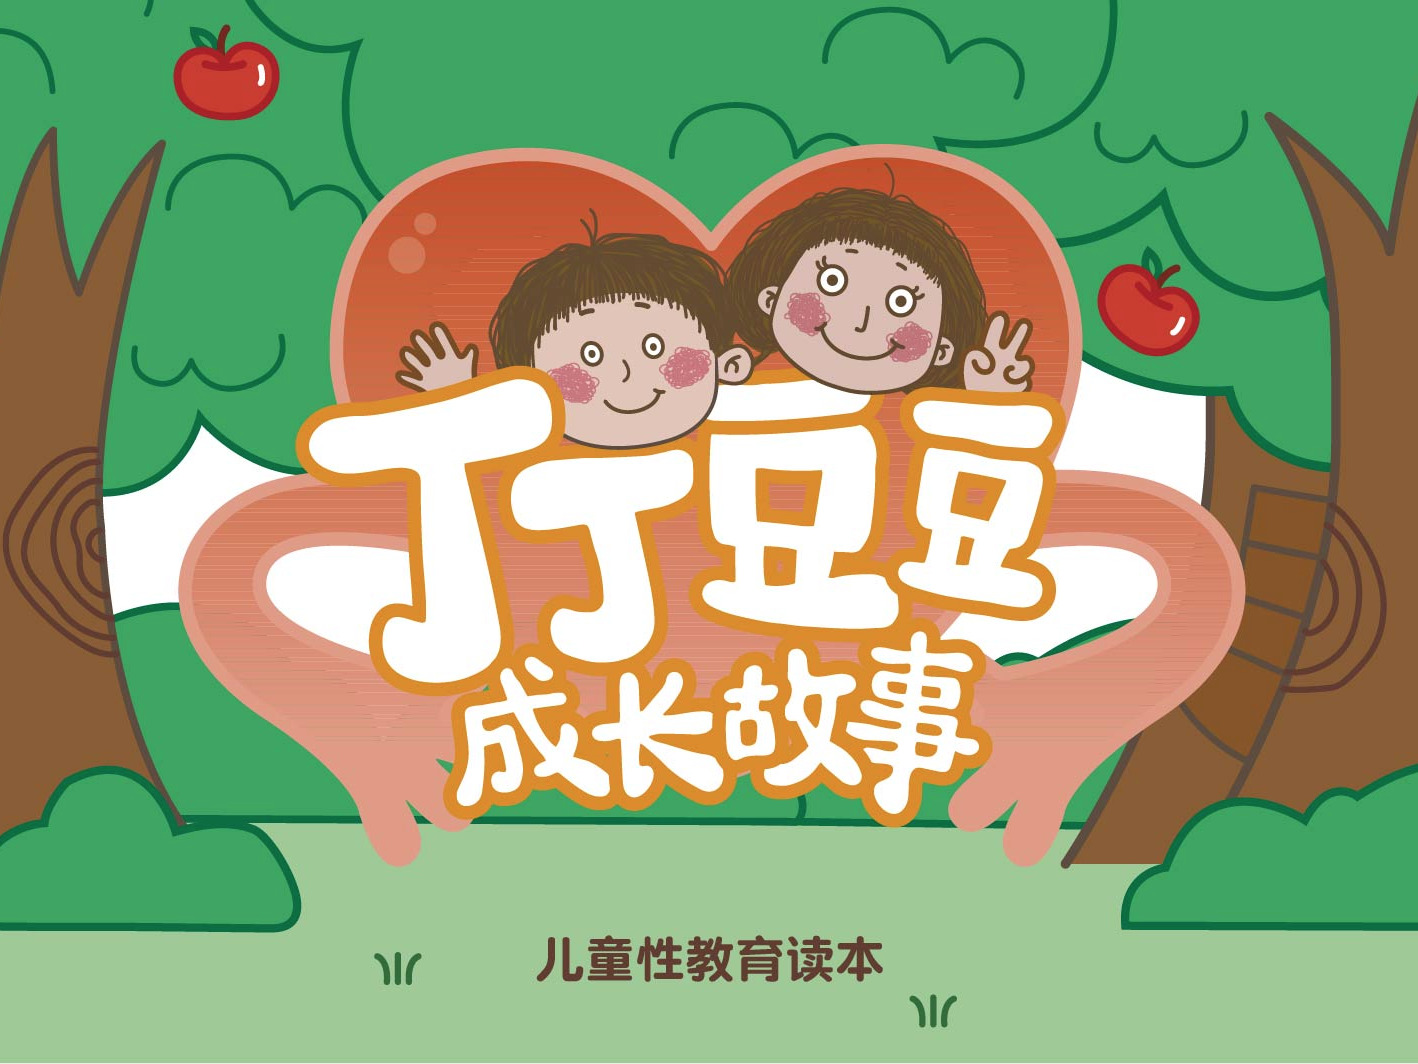 《丁丁豆豆成长故事》系列儿童性教育动画短片